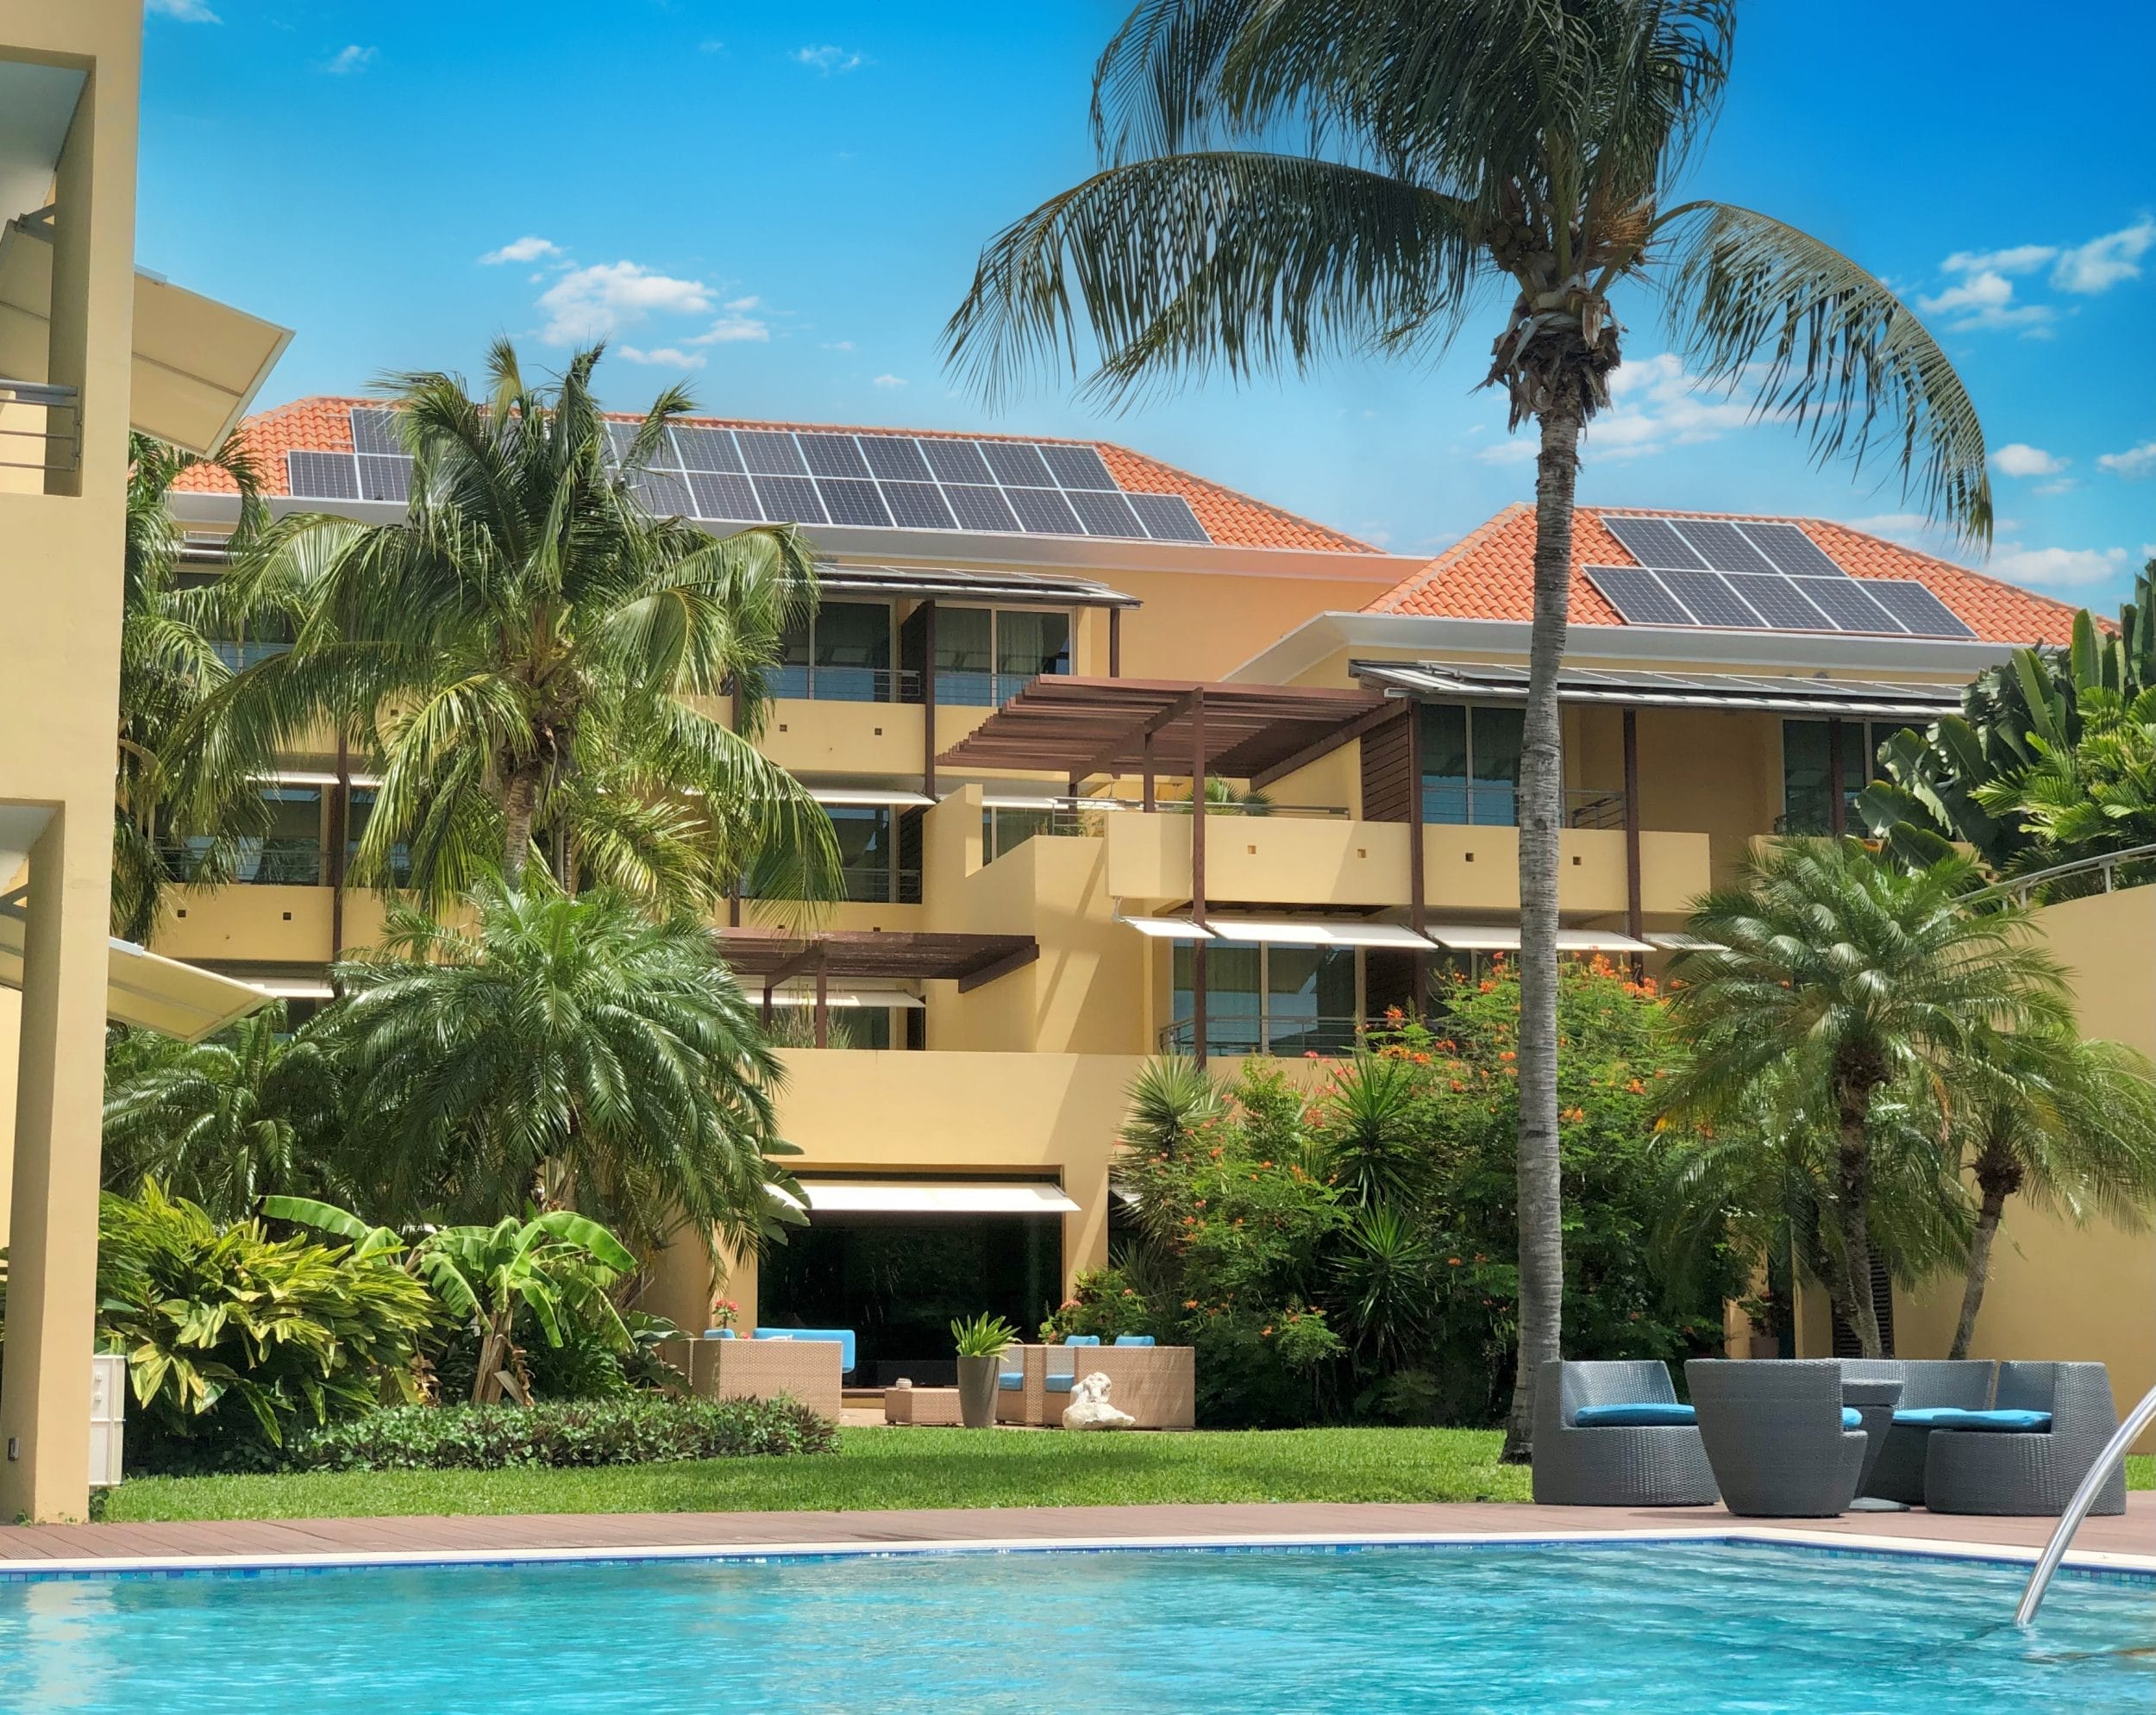 Sustainability Avila counts 1200 solar panels